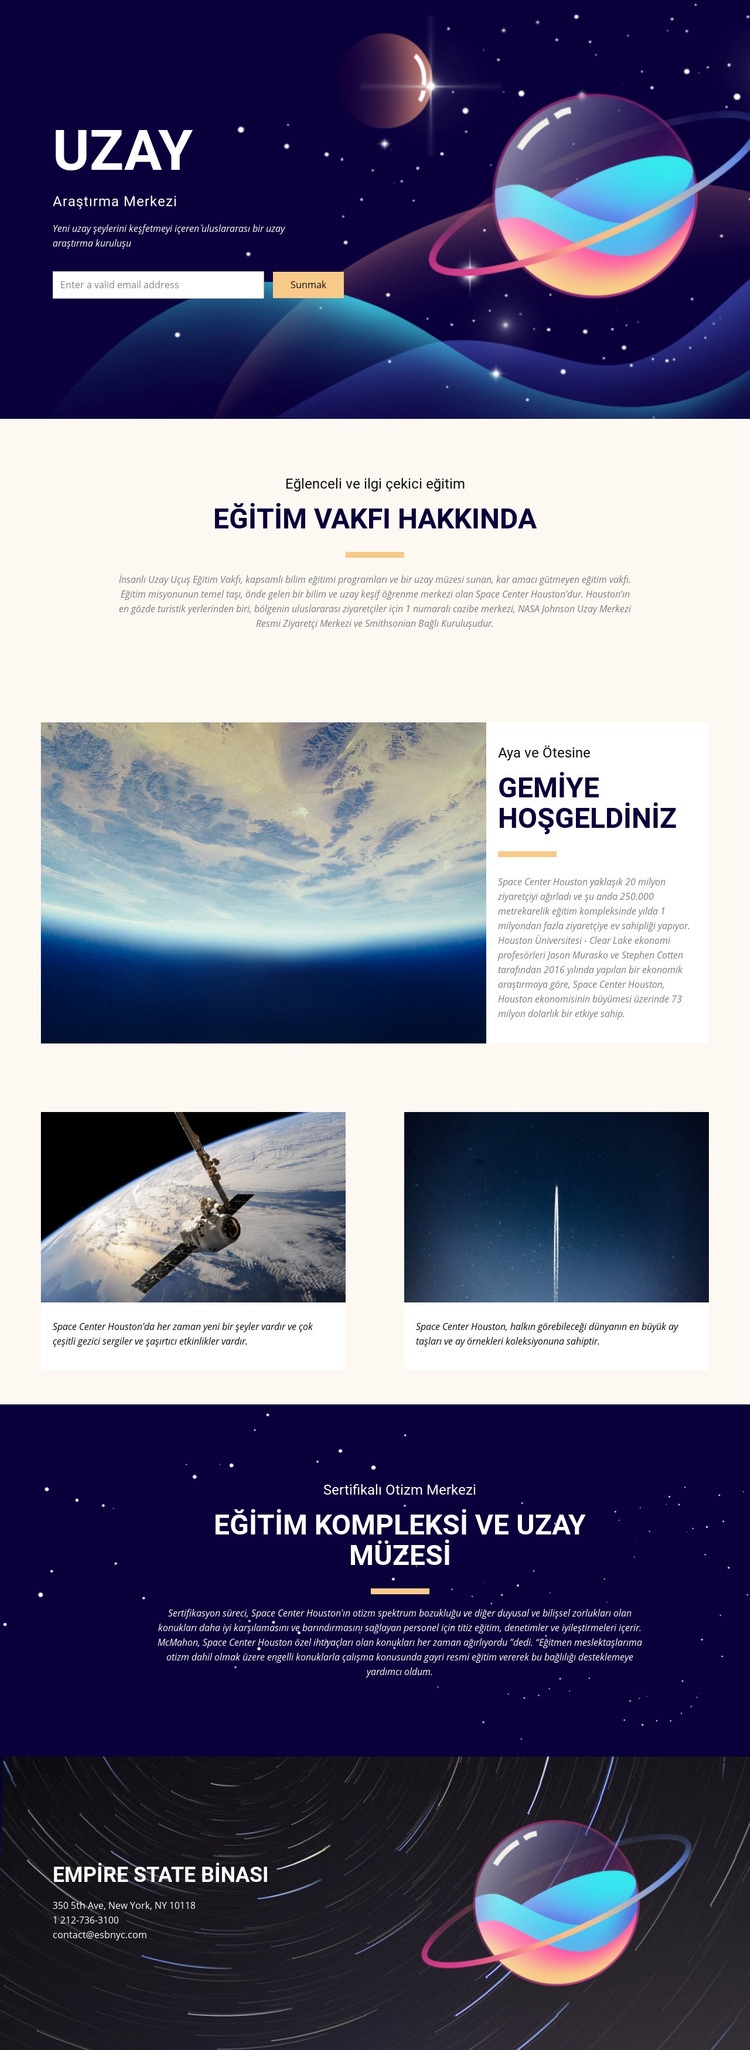 Uzay Web sitesi tasarımı